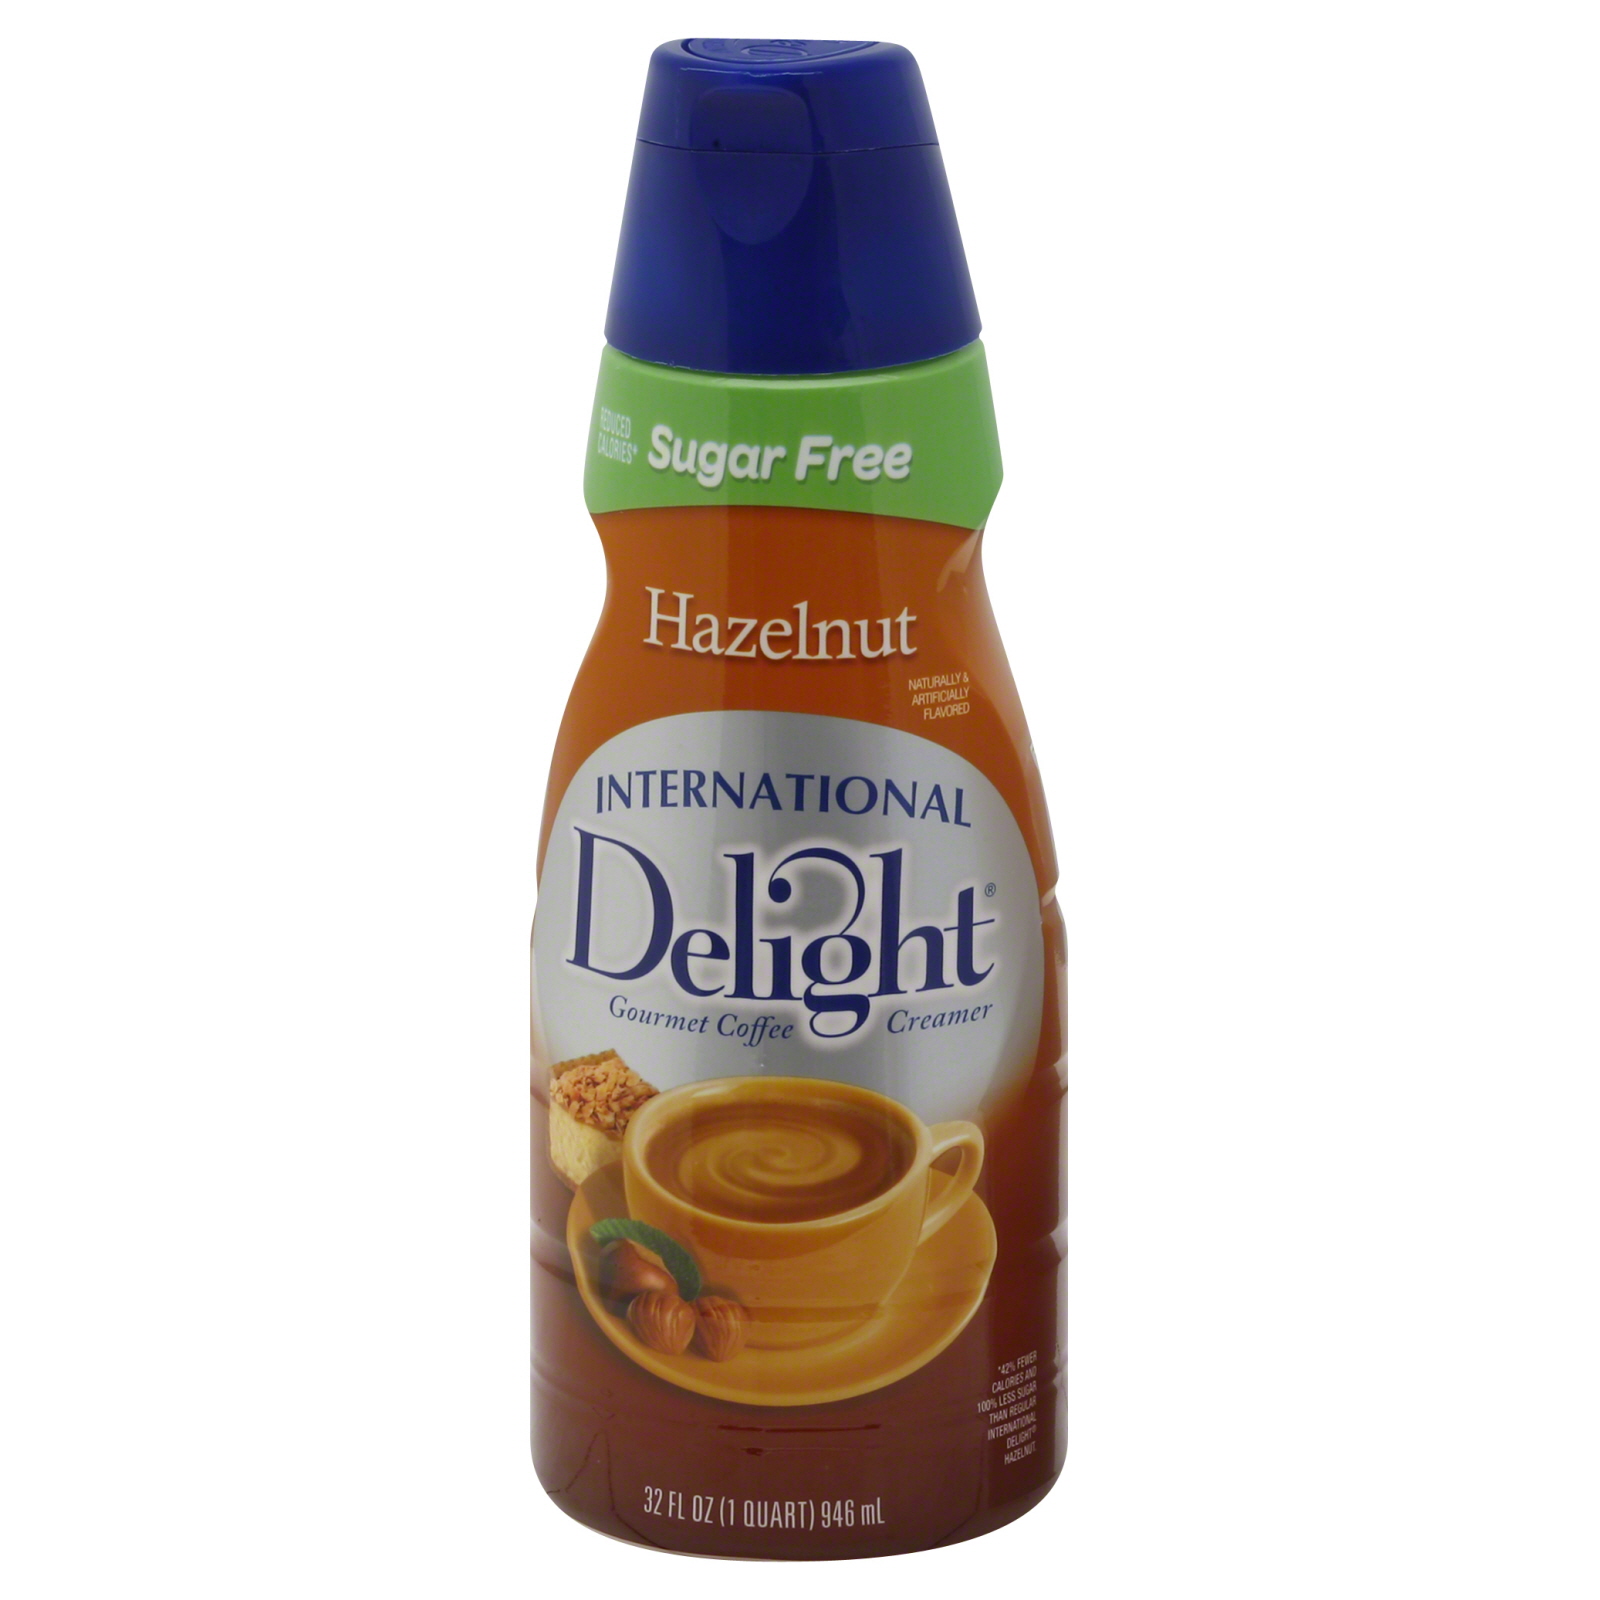 International Delight Coffee Creamer, Hazelnut, Sugar Free, 32 fl oz (1qt) 946 ml